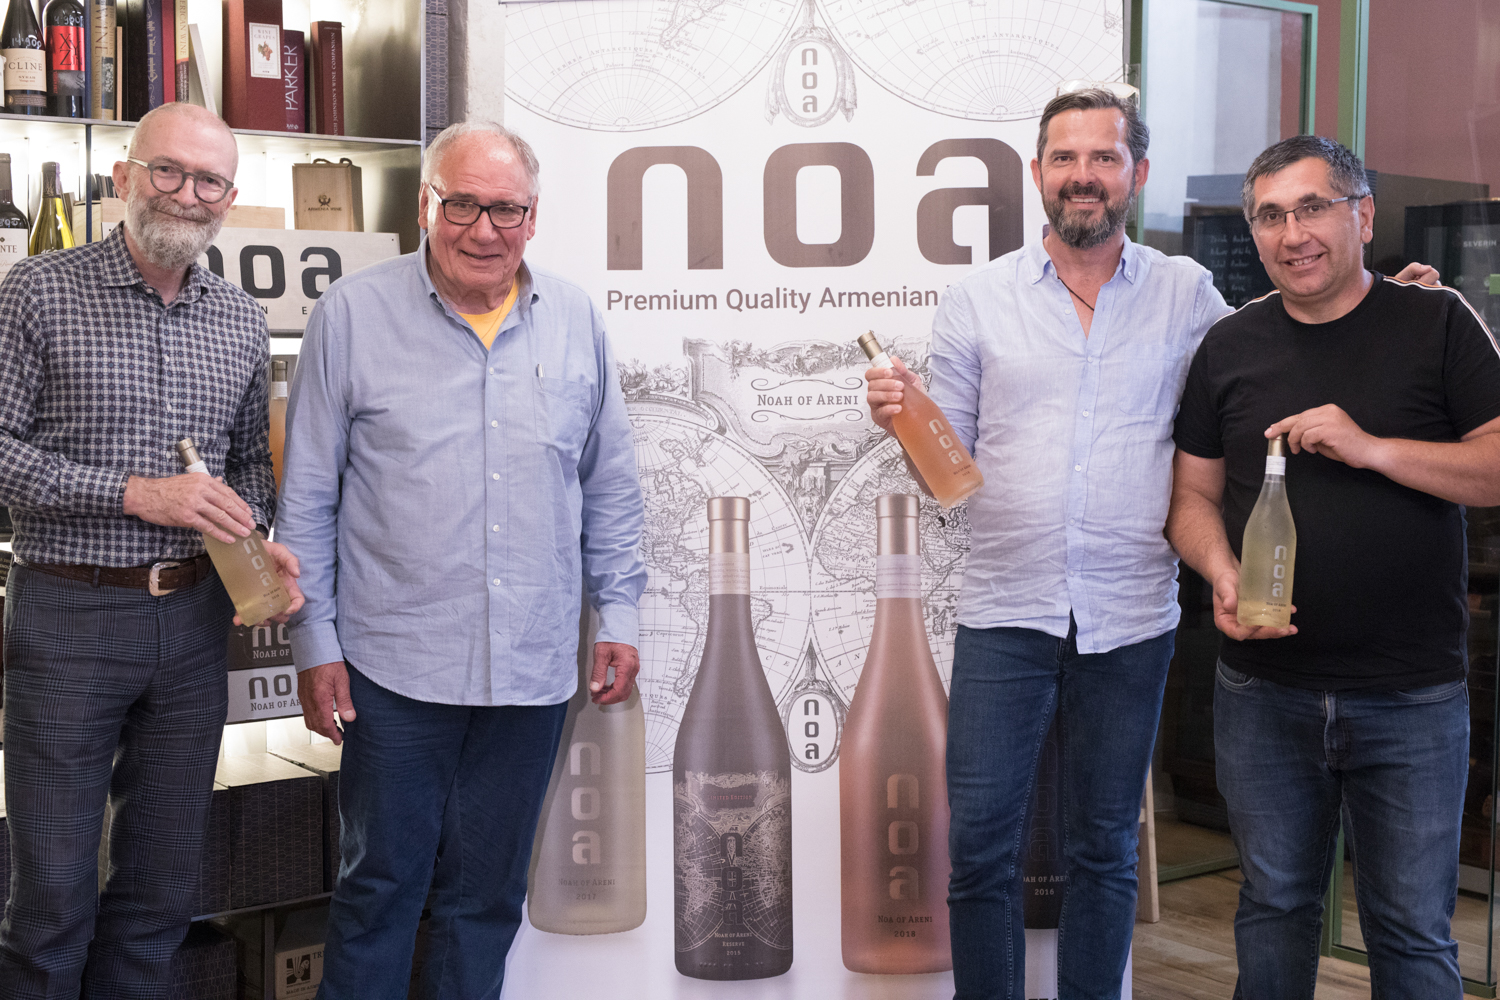 NOA Wines-ը ներկայացրել է իր առաջին քաղցր գինին՝ սպիտակ ու բնական